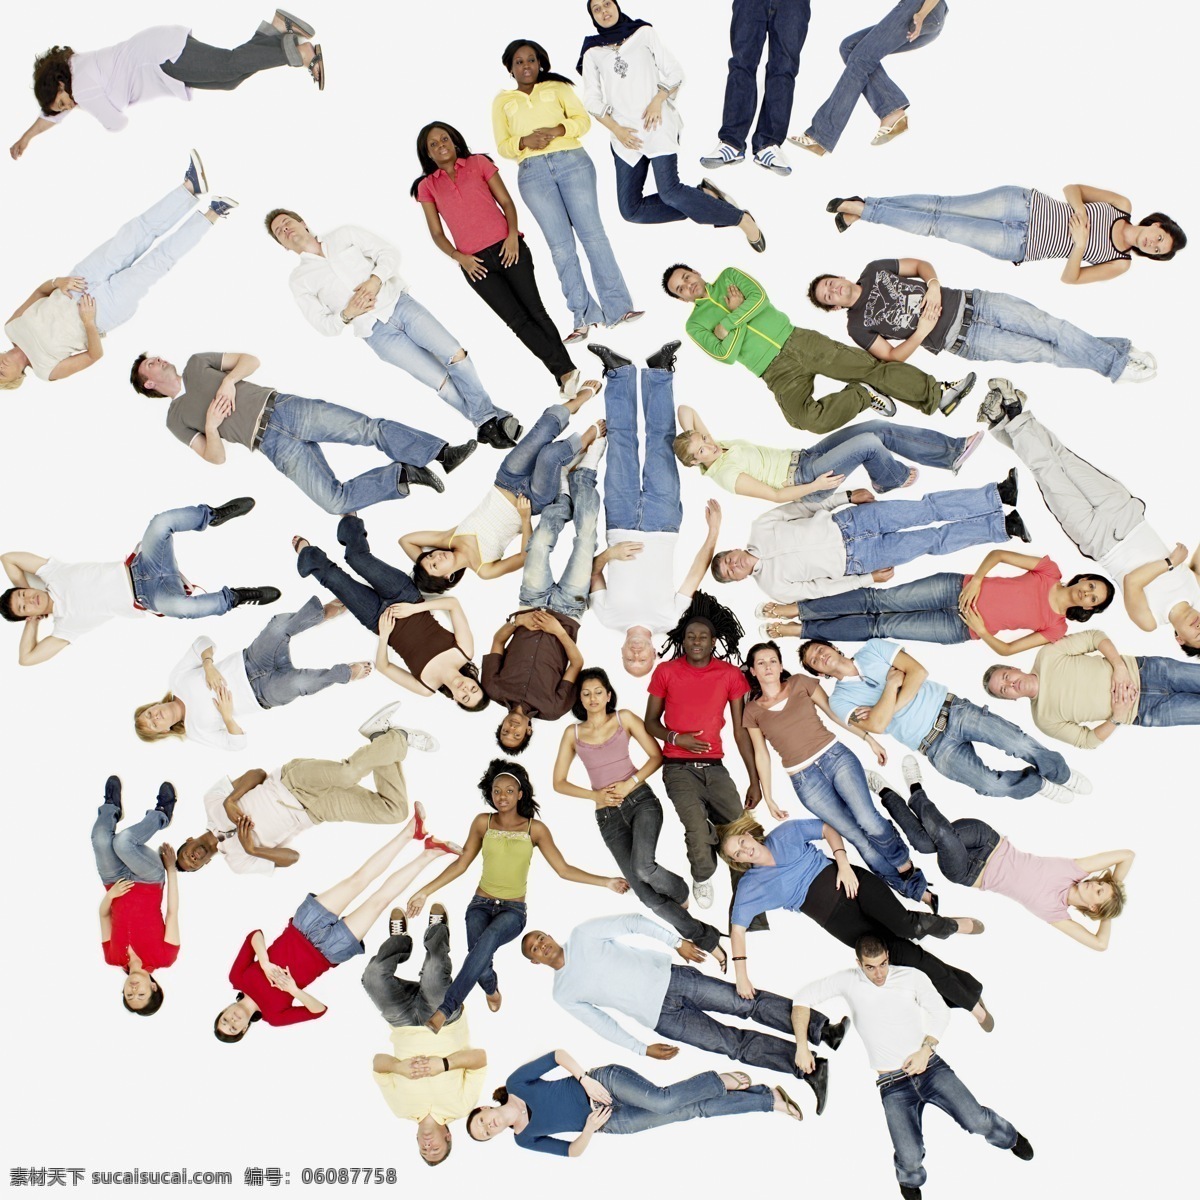 躺 下 休息 人 门 高清图片 外国 欧美 人物 躺着 多个人 在一起 一群人 人们 t恤 挤在一起 人群 女人 牛仔裤 仰卧 仰躺 睡觉 男人 生活人物 人物图片